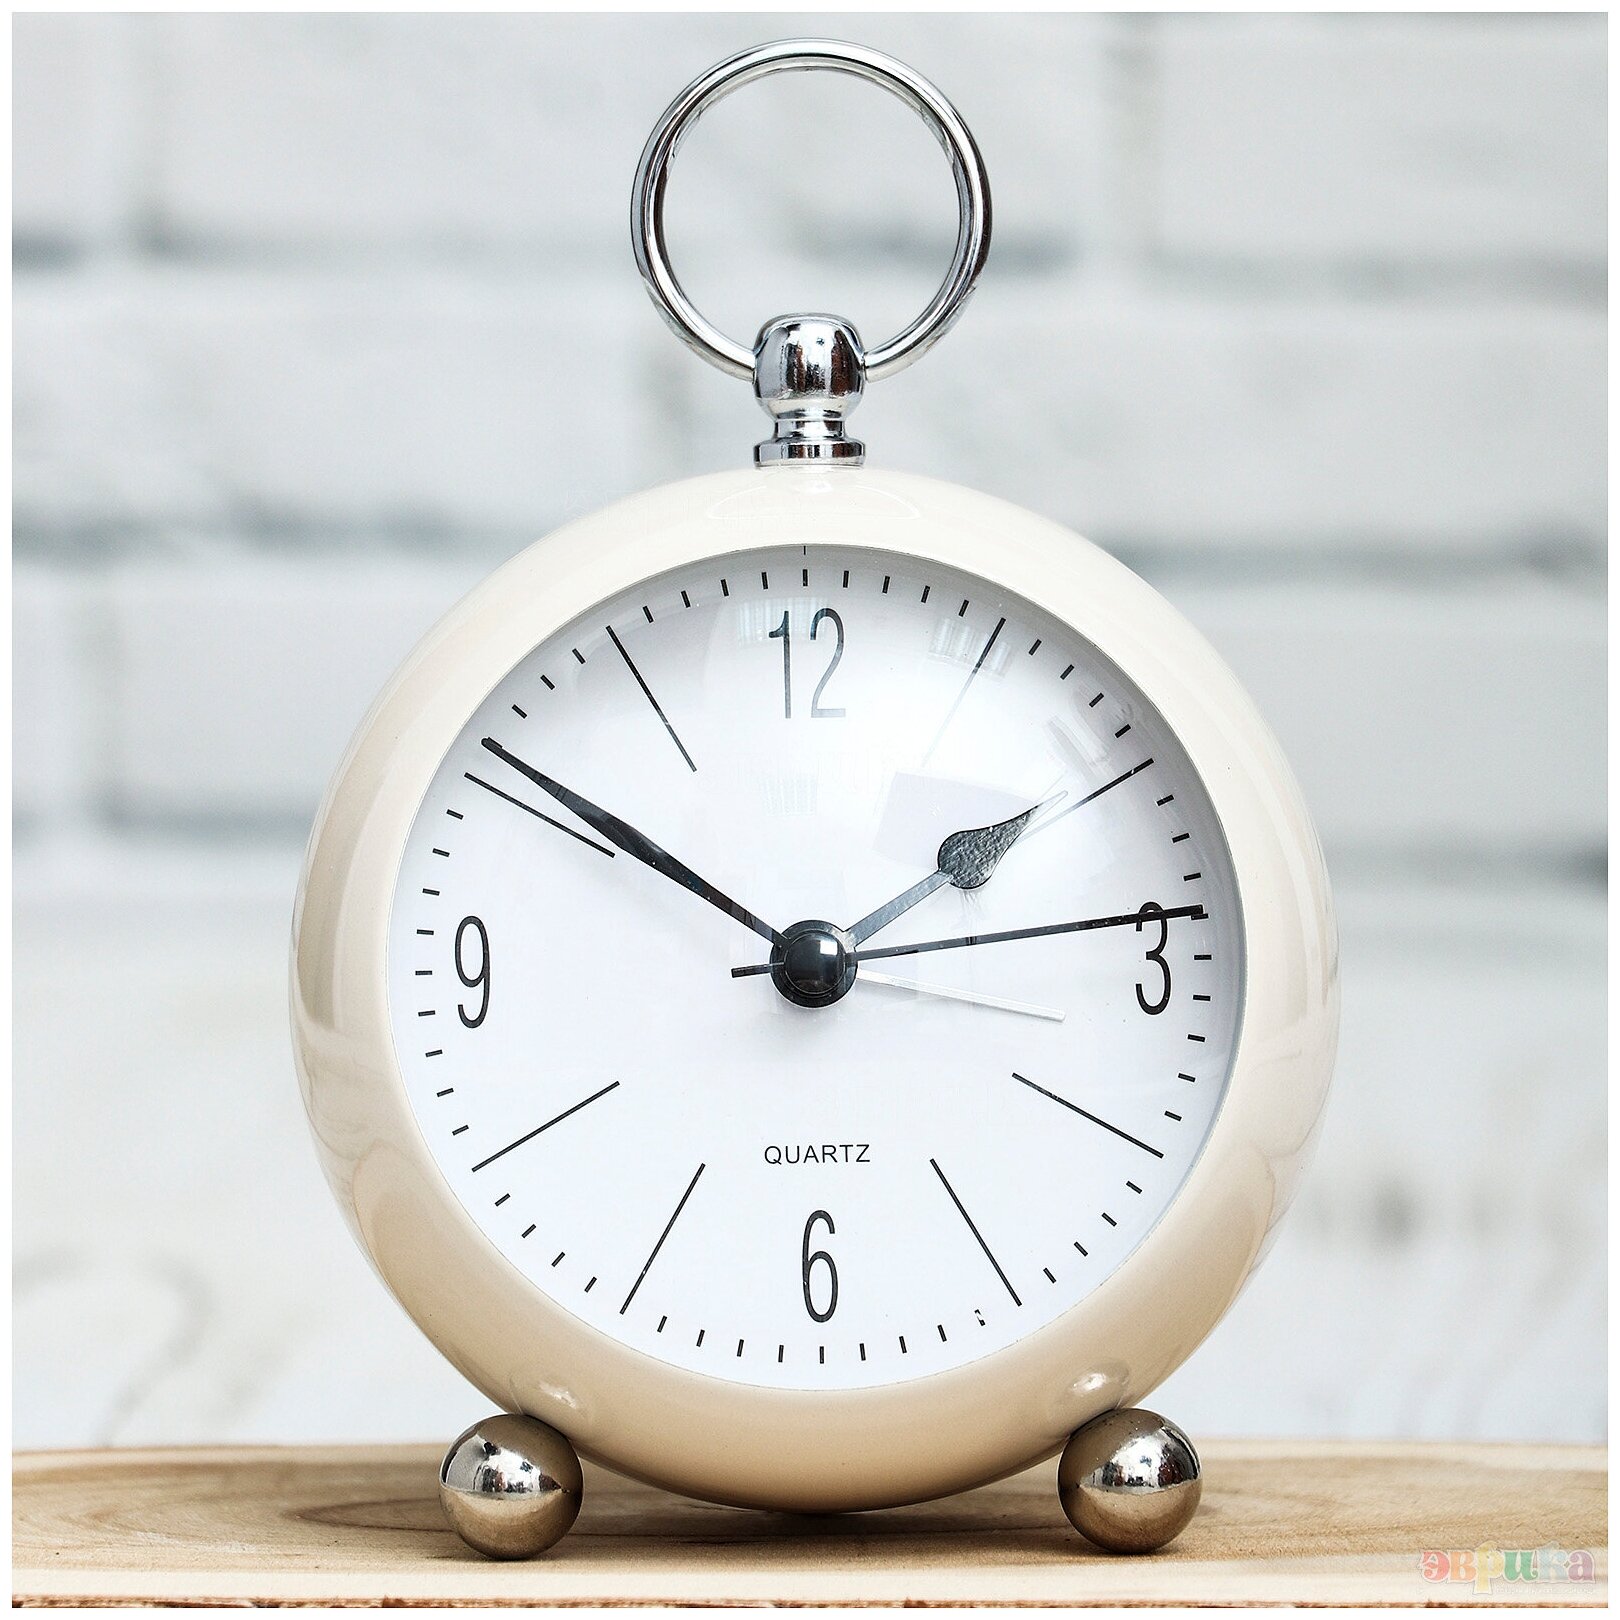 Часы будильник металл Кругляш белые классические настольные подарок женщине на 8 марта, мужчине на 23 февраля, ребенку